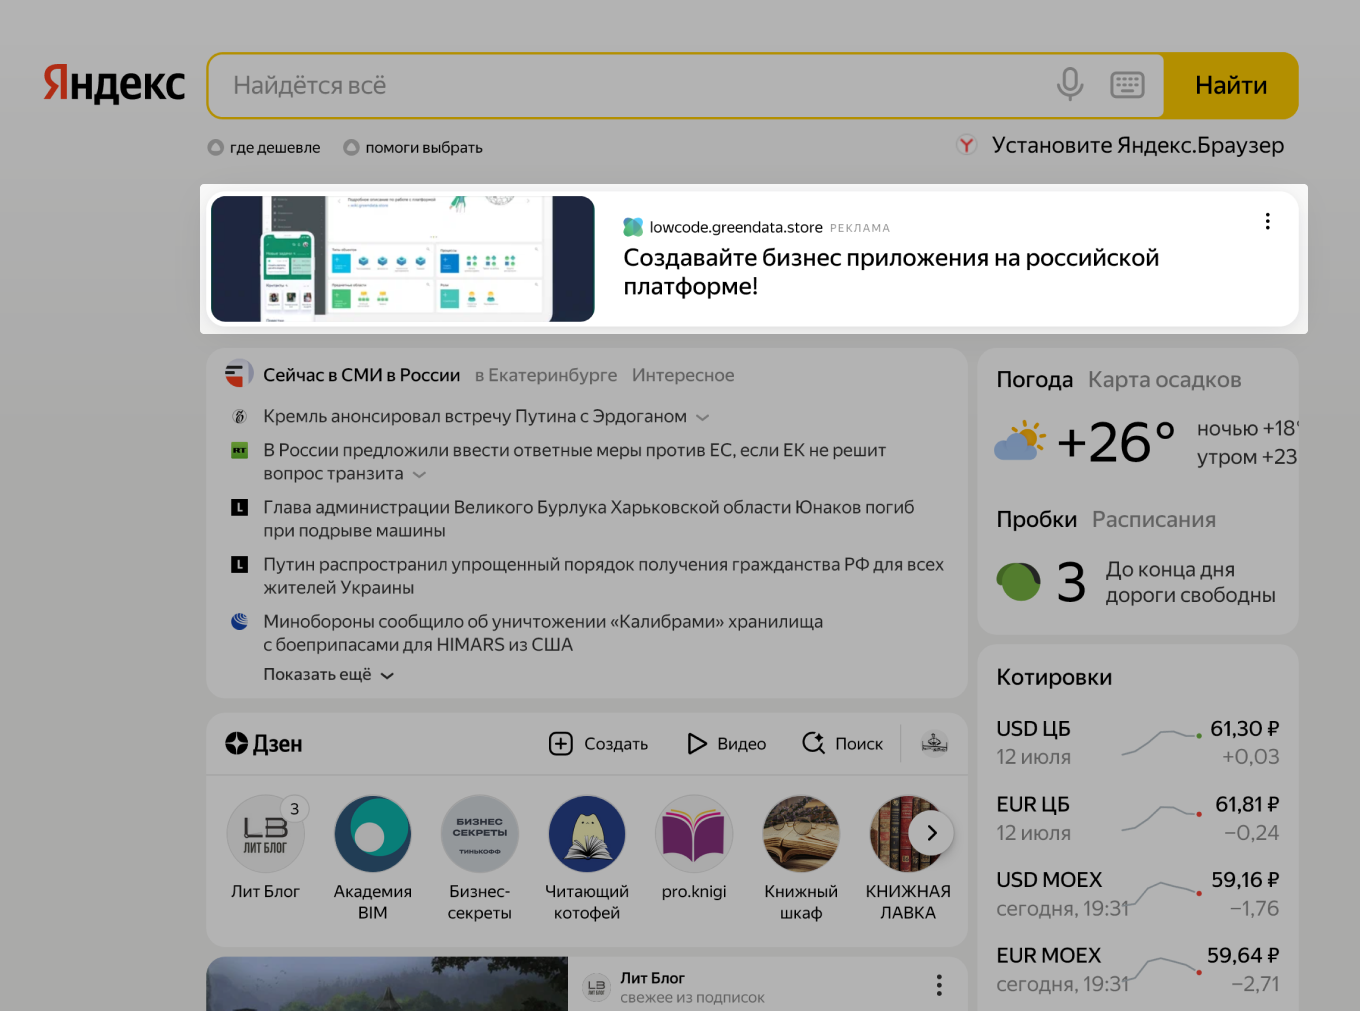 Как выглядит реклама на главной в Яндексе